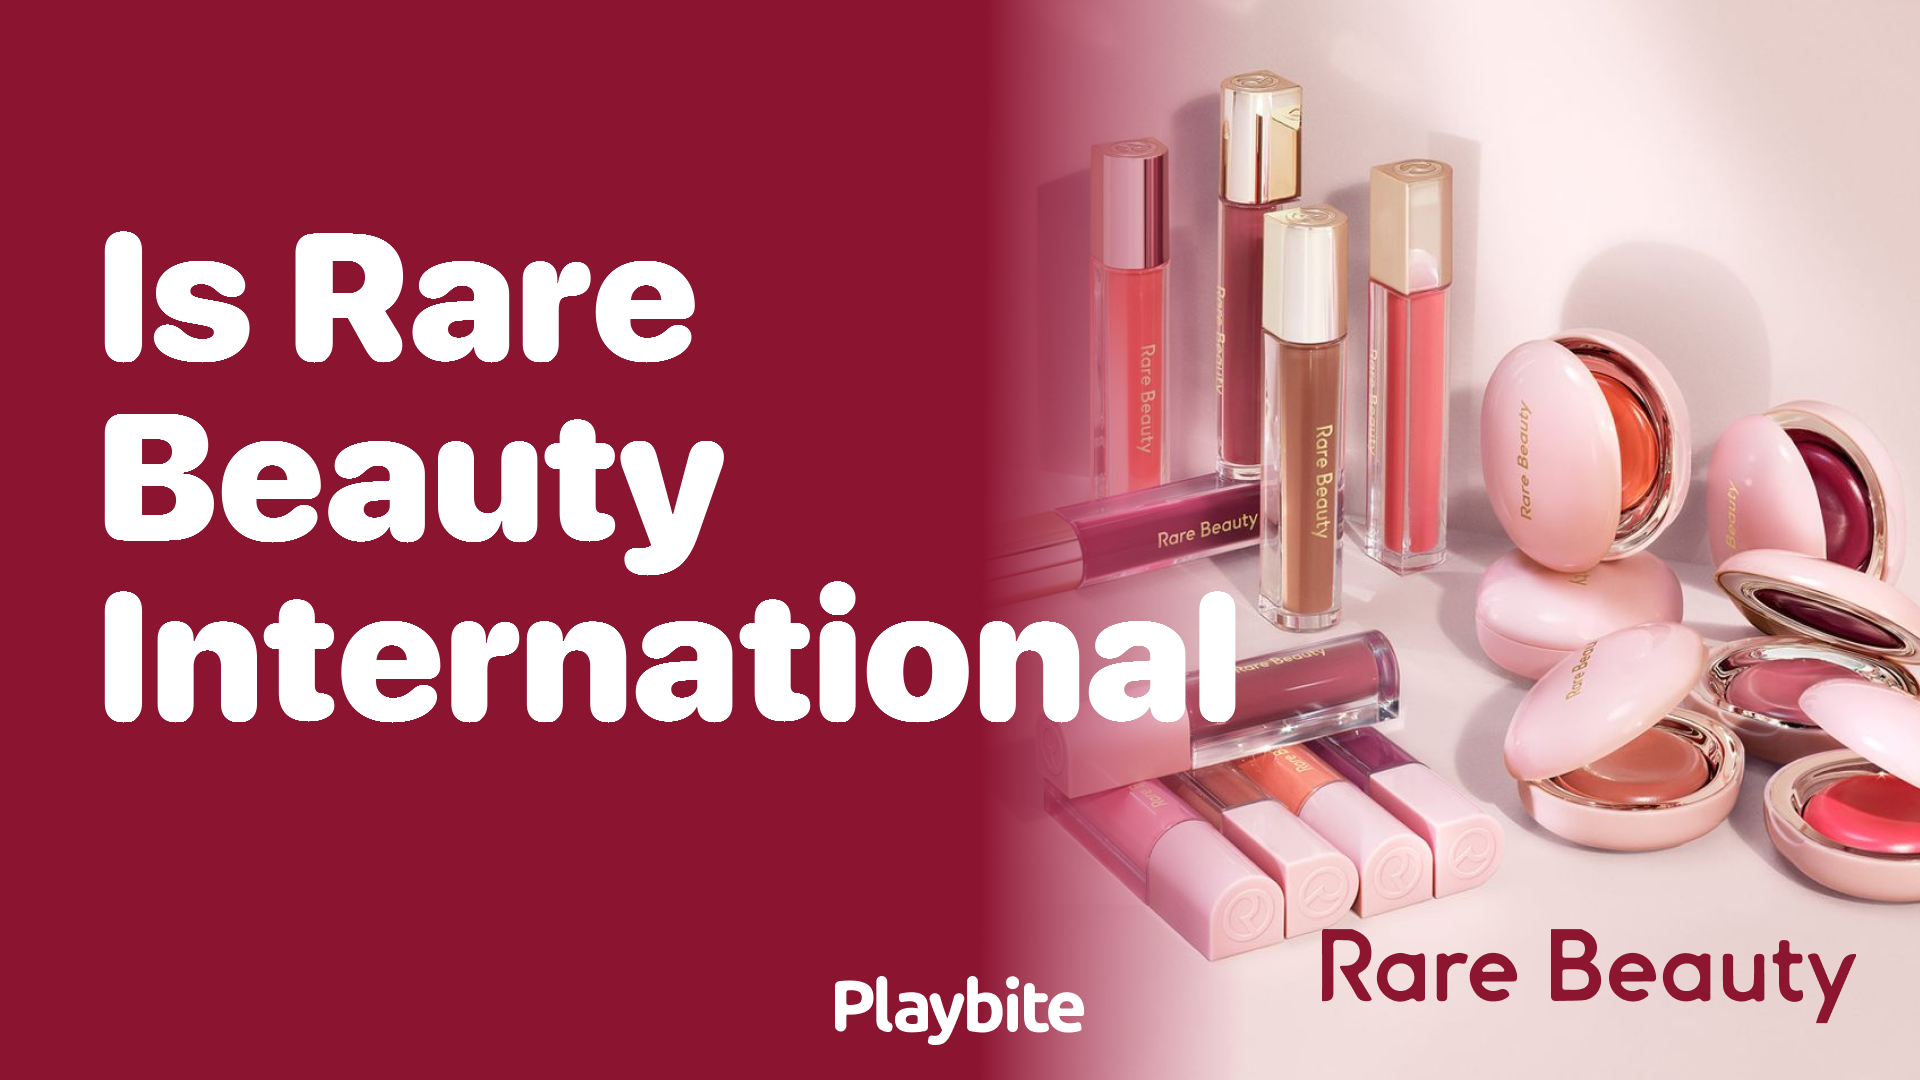 Is Rare Beauty Available Internationally?